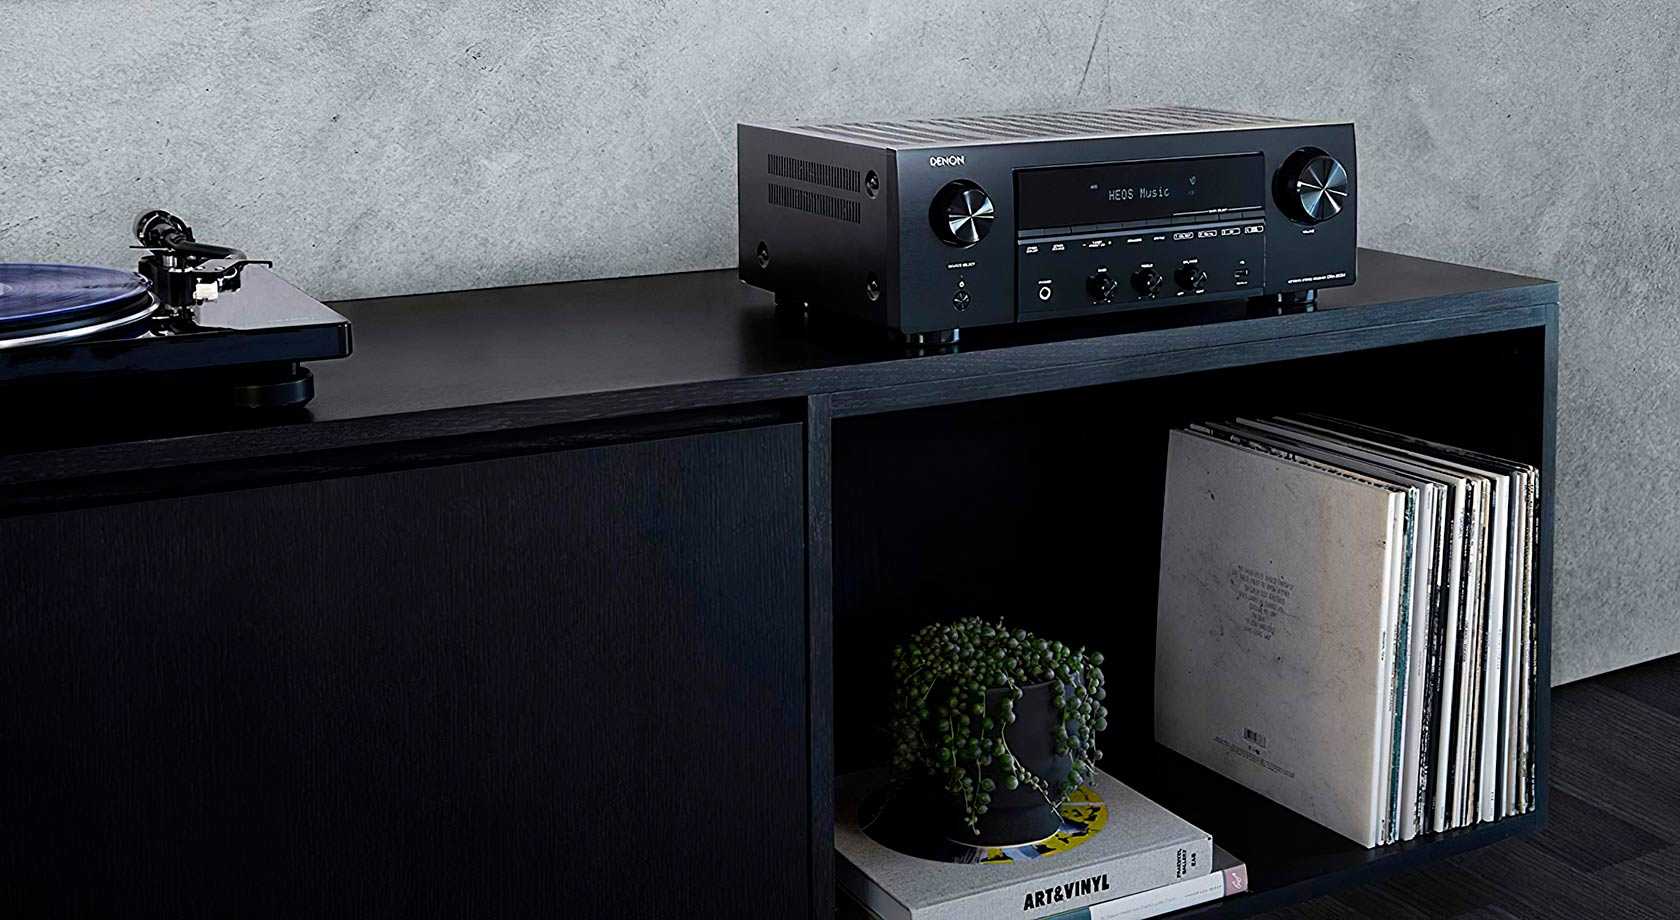 Компания Denon представила свой первый стереоресивер DRA-800H с возможностью подключения телевизора и потокового воспроизведения музыки из сети Интернет Новинка адресована, по мнению бренда, энтузиастам качественного домашнего звука, предпочитающим мощный